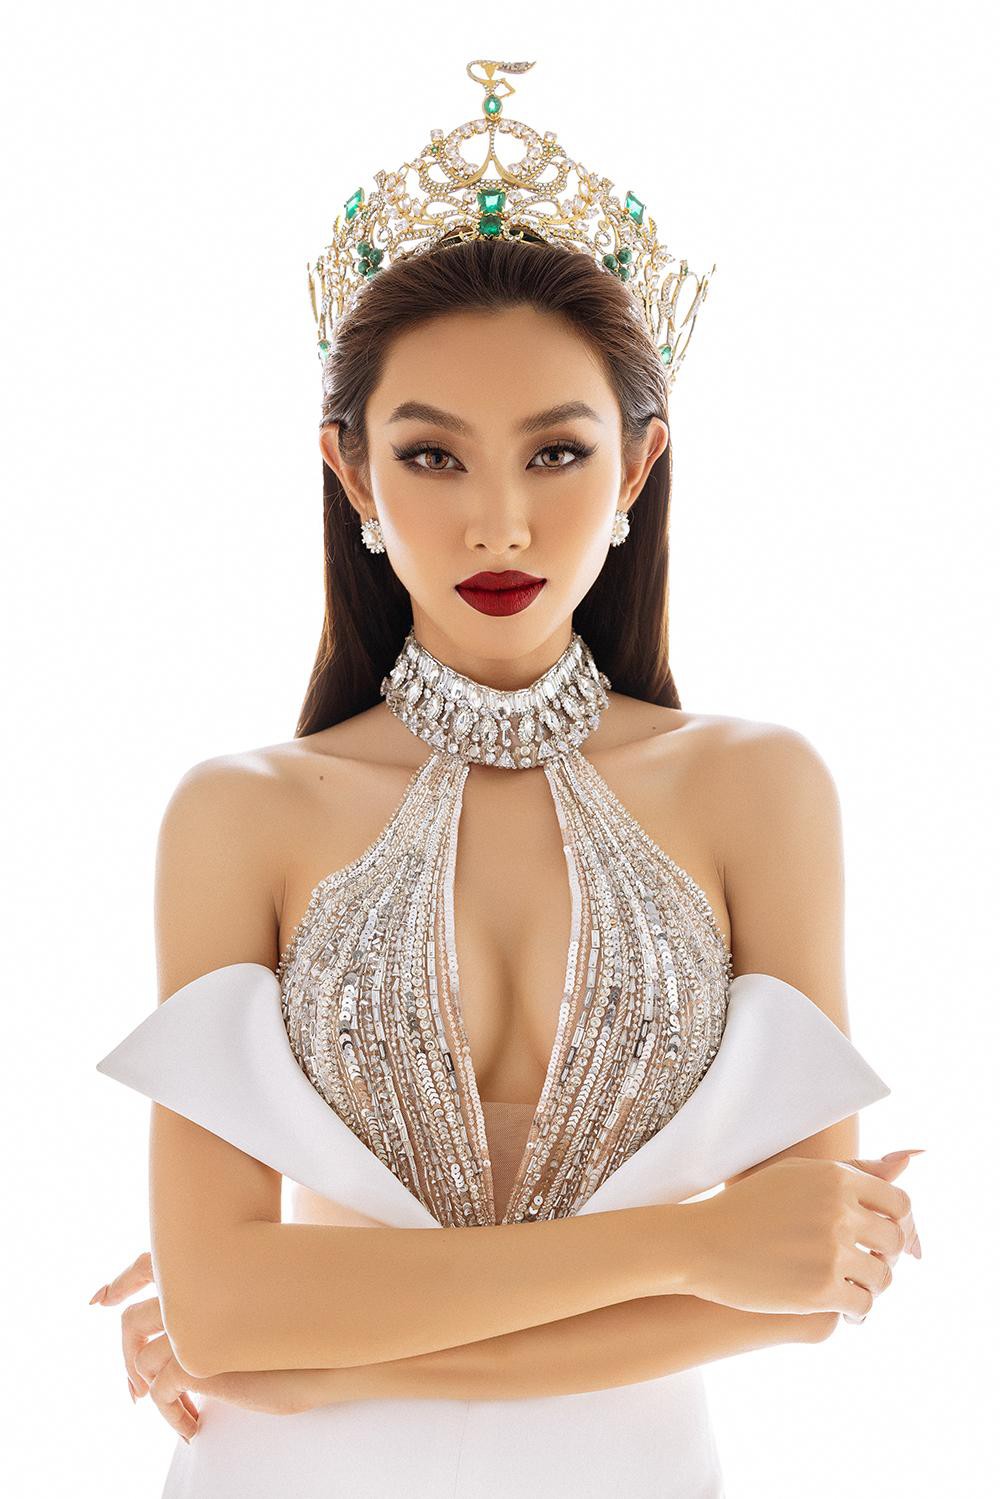 Thuỳ Tiên diện thiết kế khoét vòng 1 nóng bỏng trong bộ ảnh kỷ niệm 6 tháng đăng quang Miss Grand - Ảnh 6.